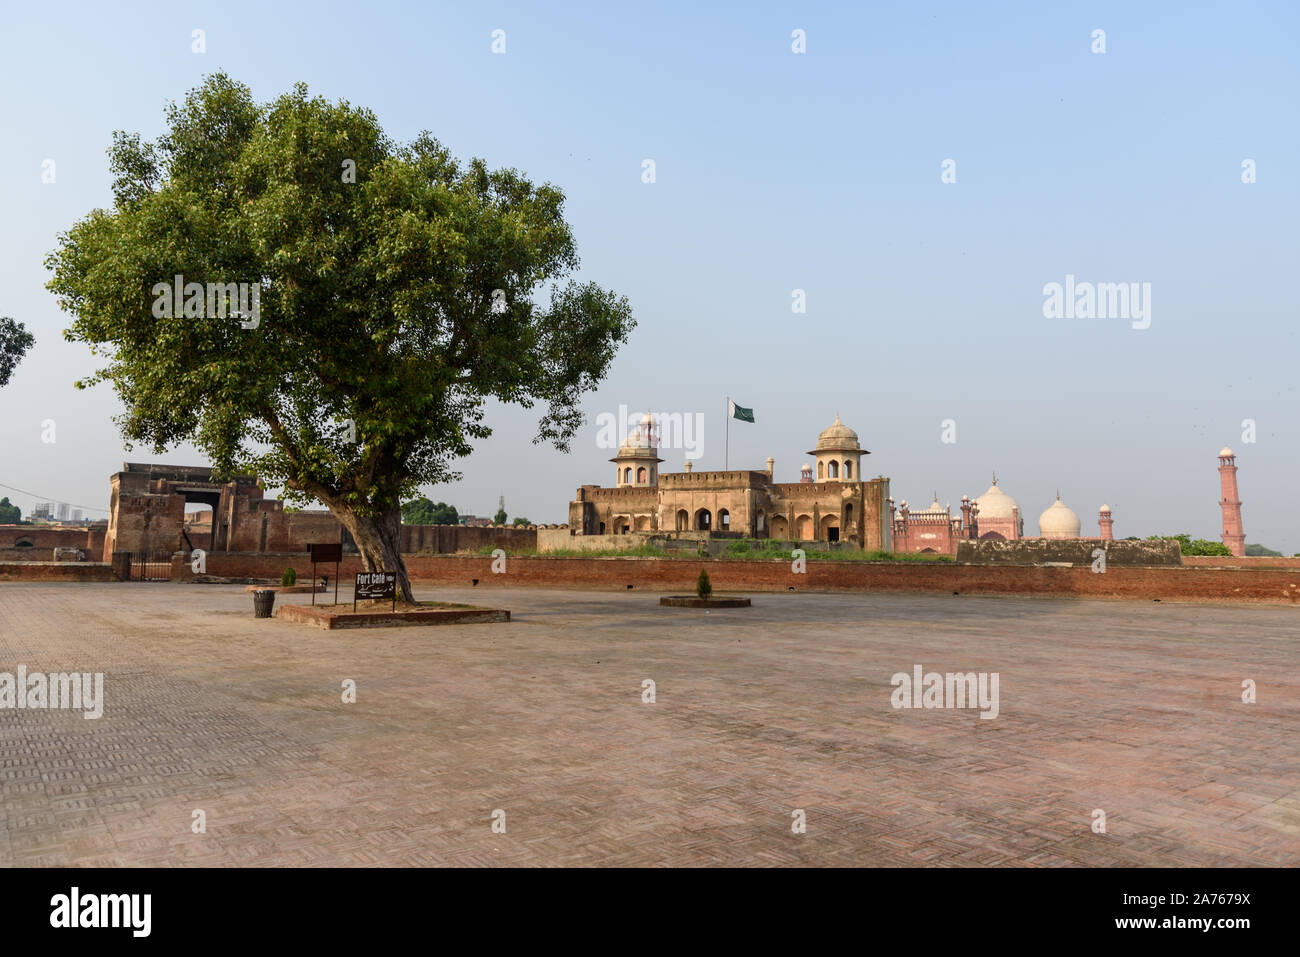 LAHORE, PAKISTAN -SEP 23, 2016 : vue frontale de l'Shahi Qila, le Fort de Lahore à Lahore au Pakistan. Banque D'Images